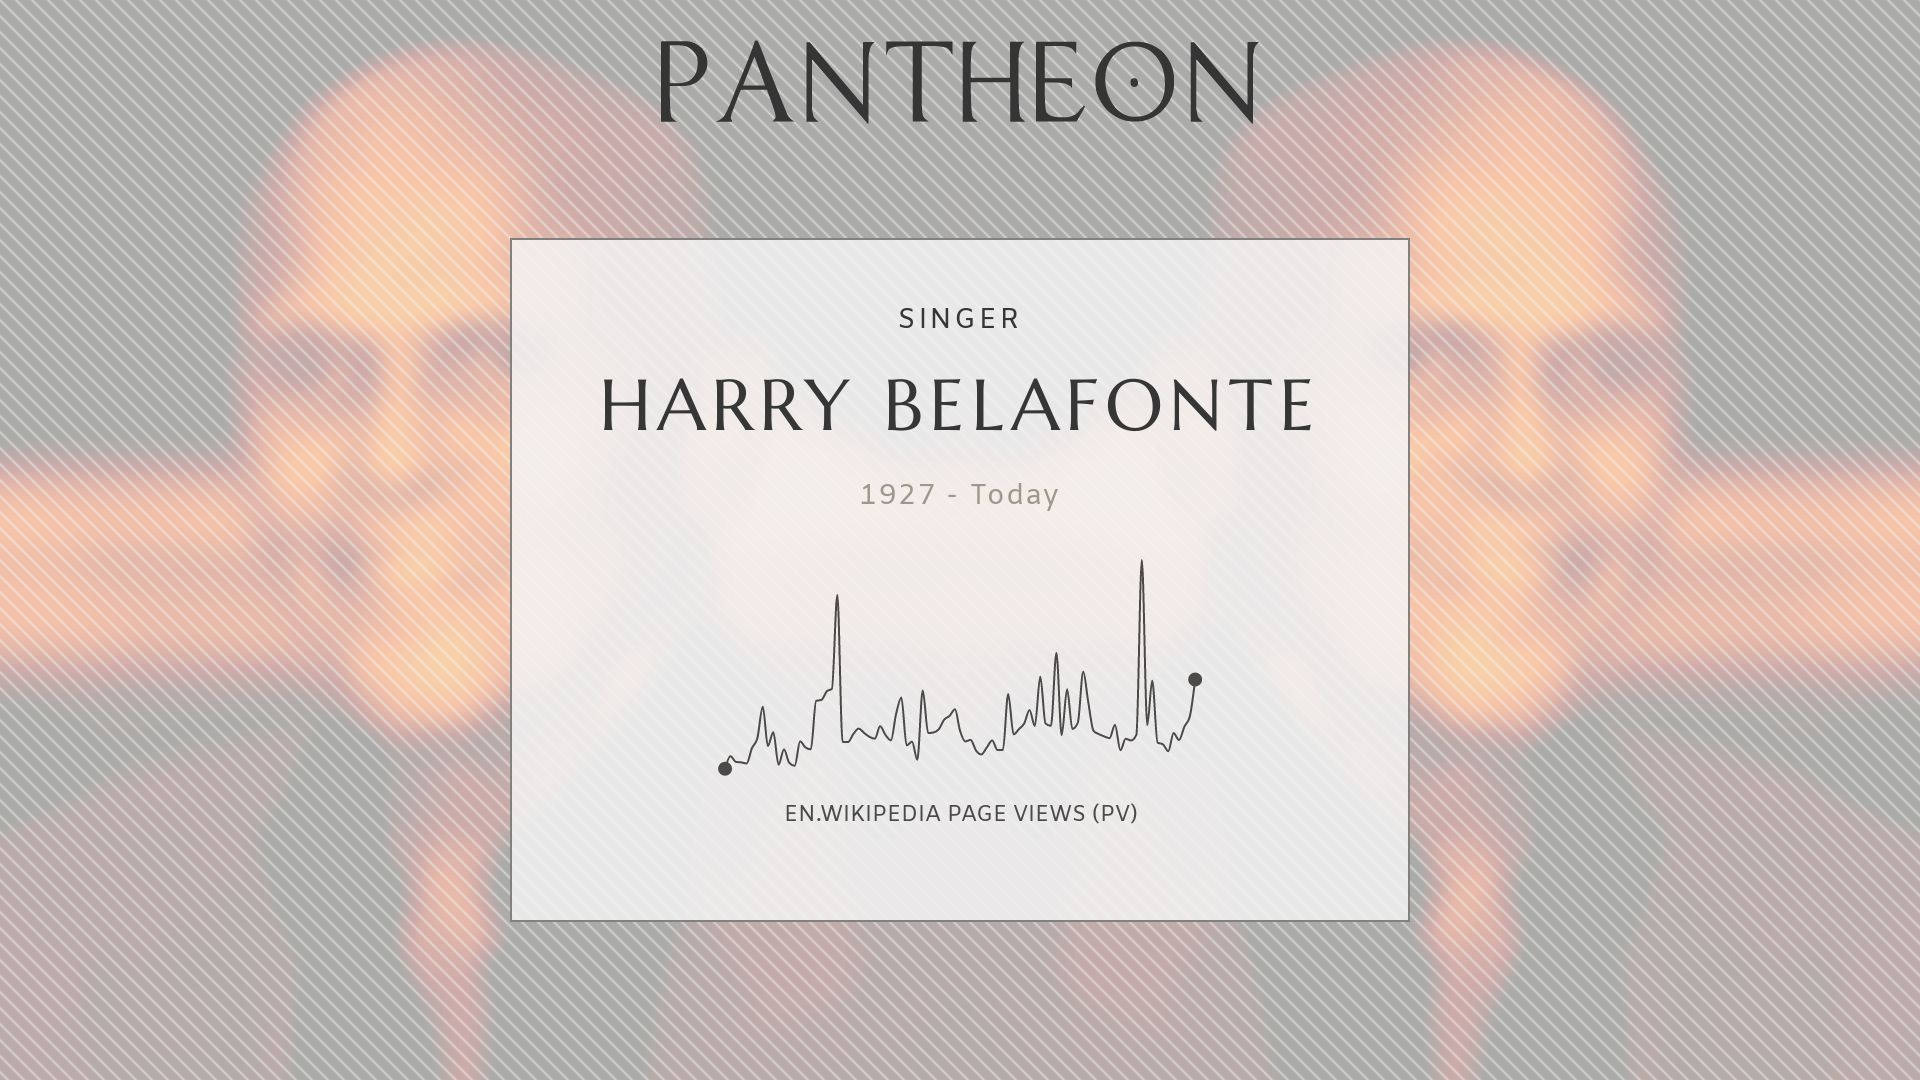 Harry Belafonte Pantheon-platten. Wallpaper